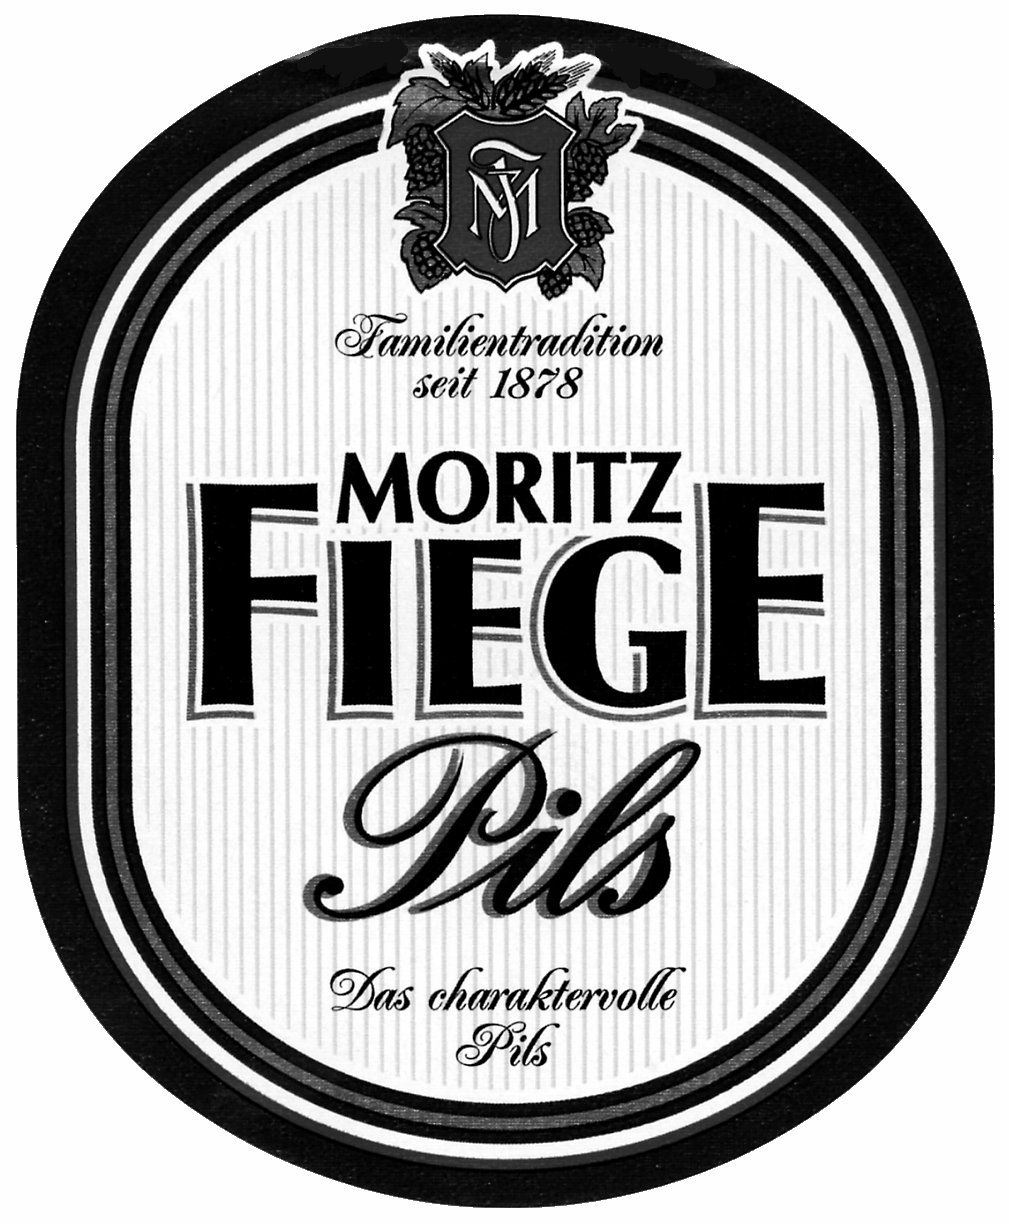 MORITZ FIEGE Pils